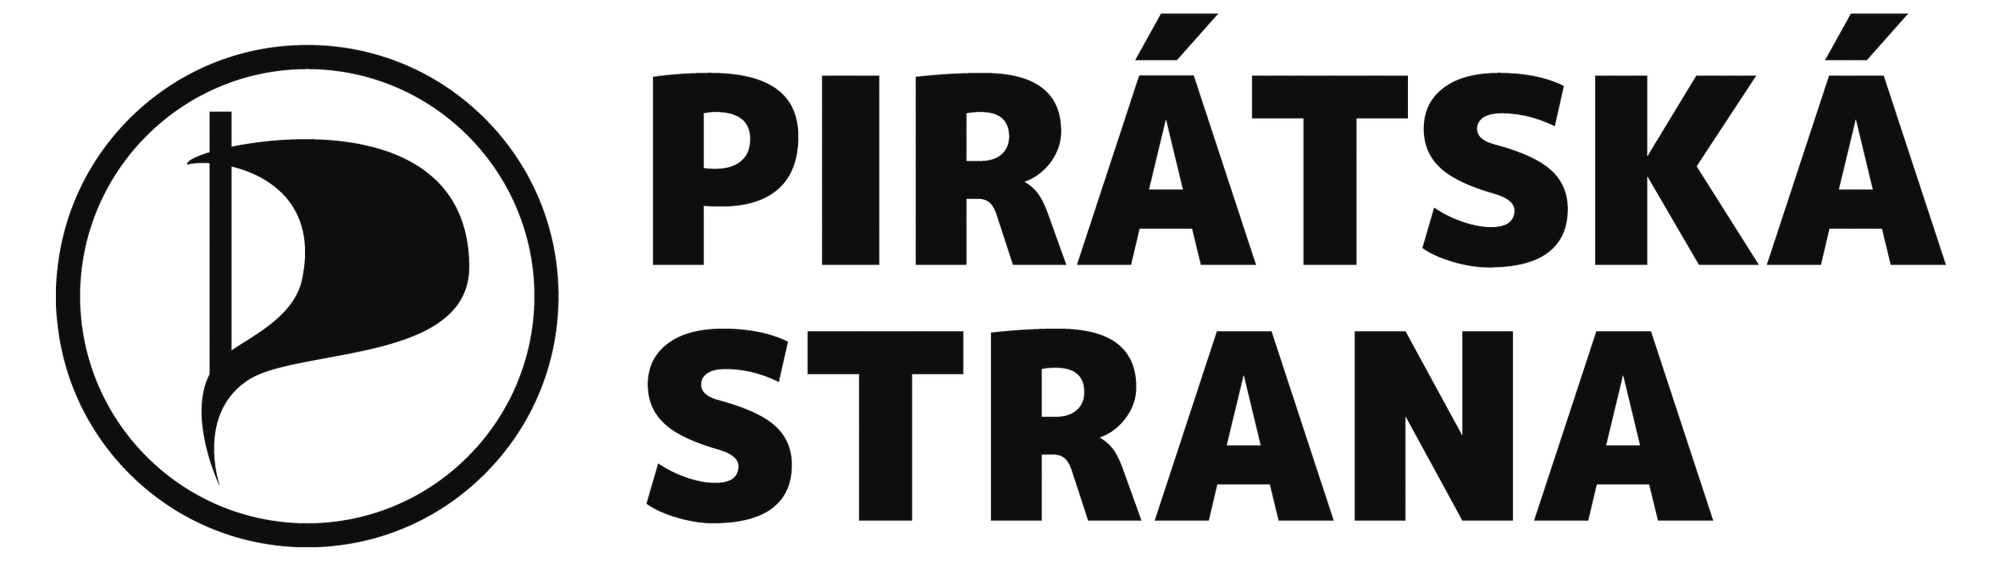 Piráti budou prosazovat program z opozice